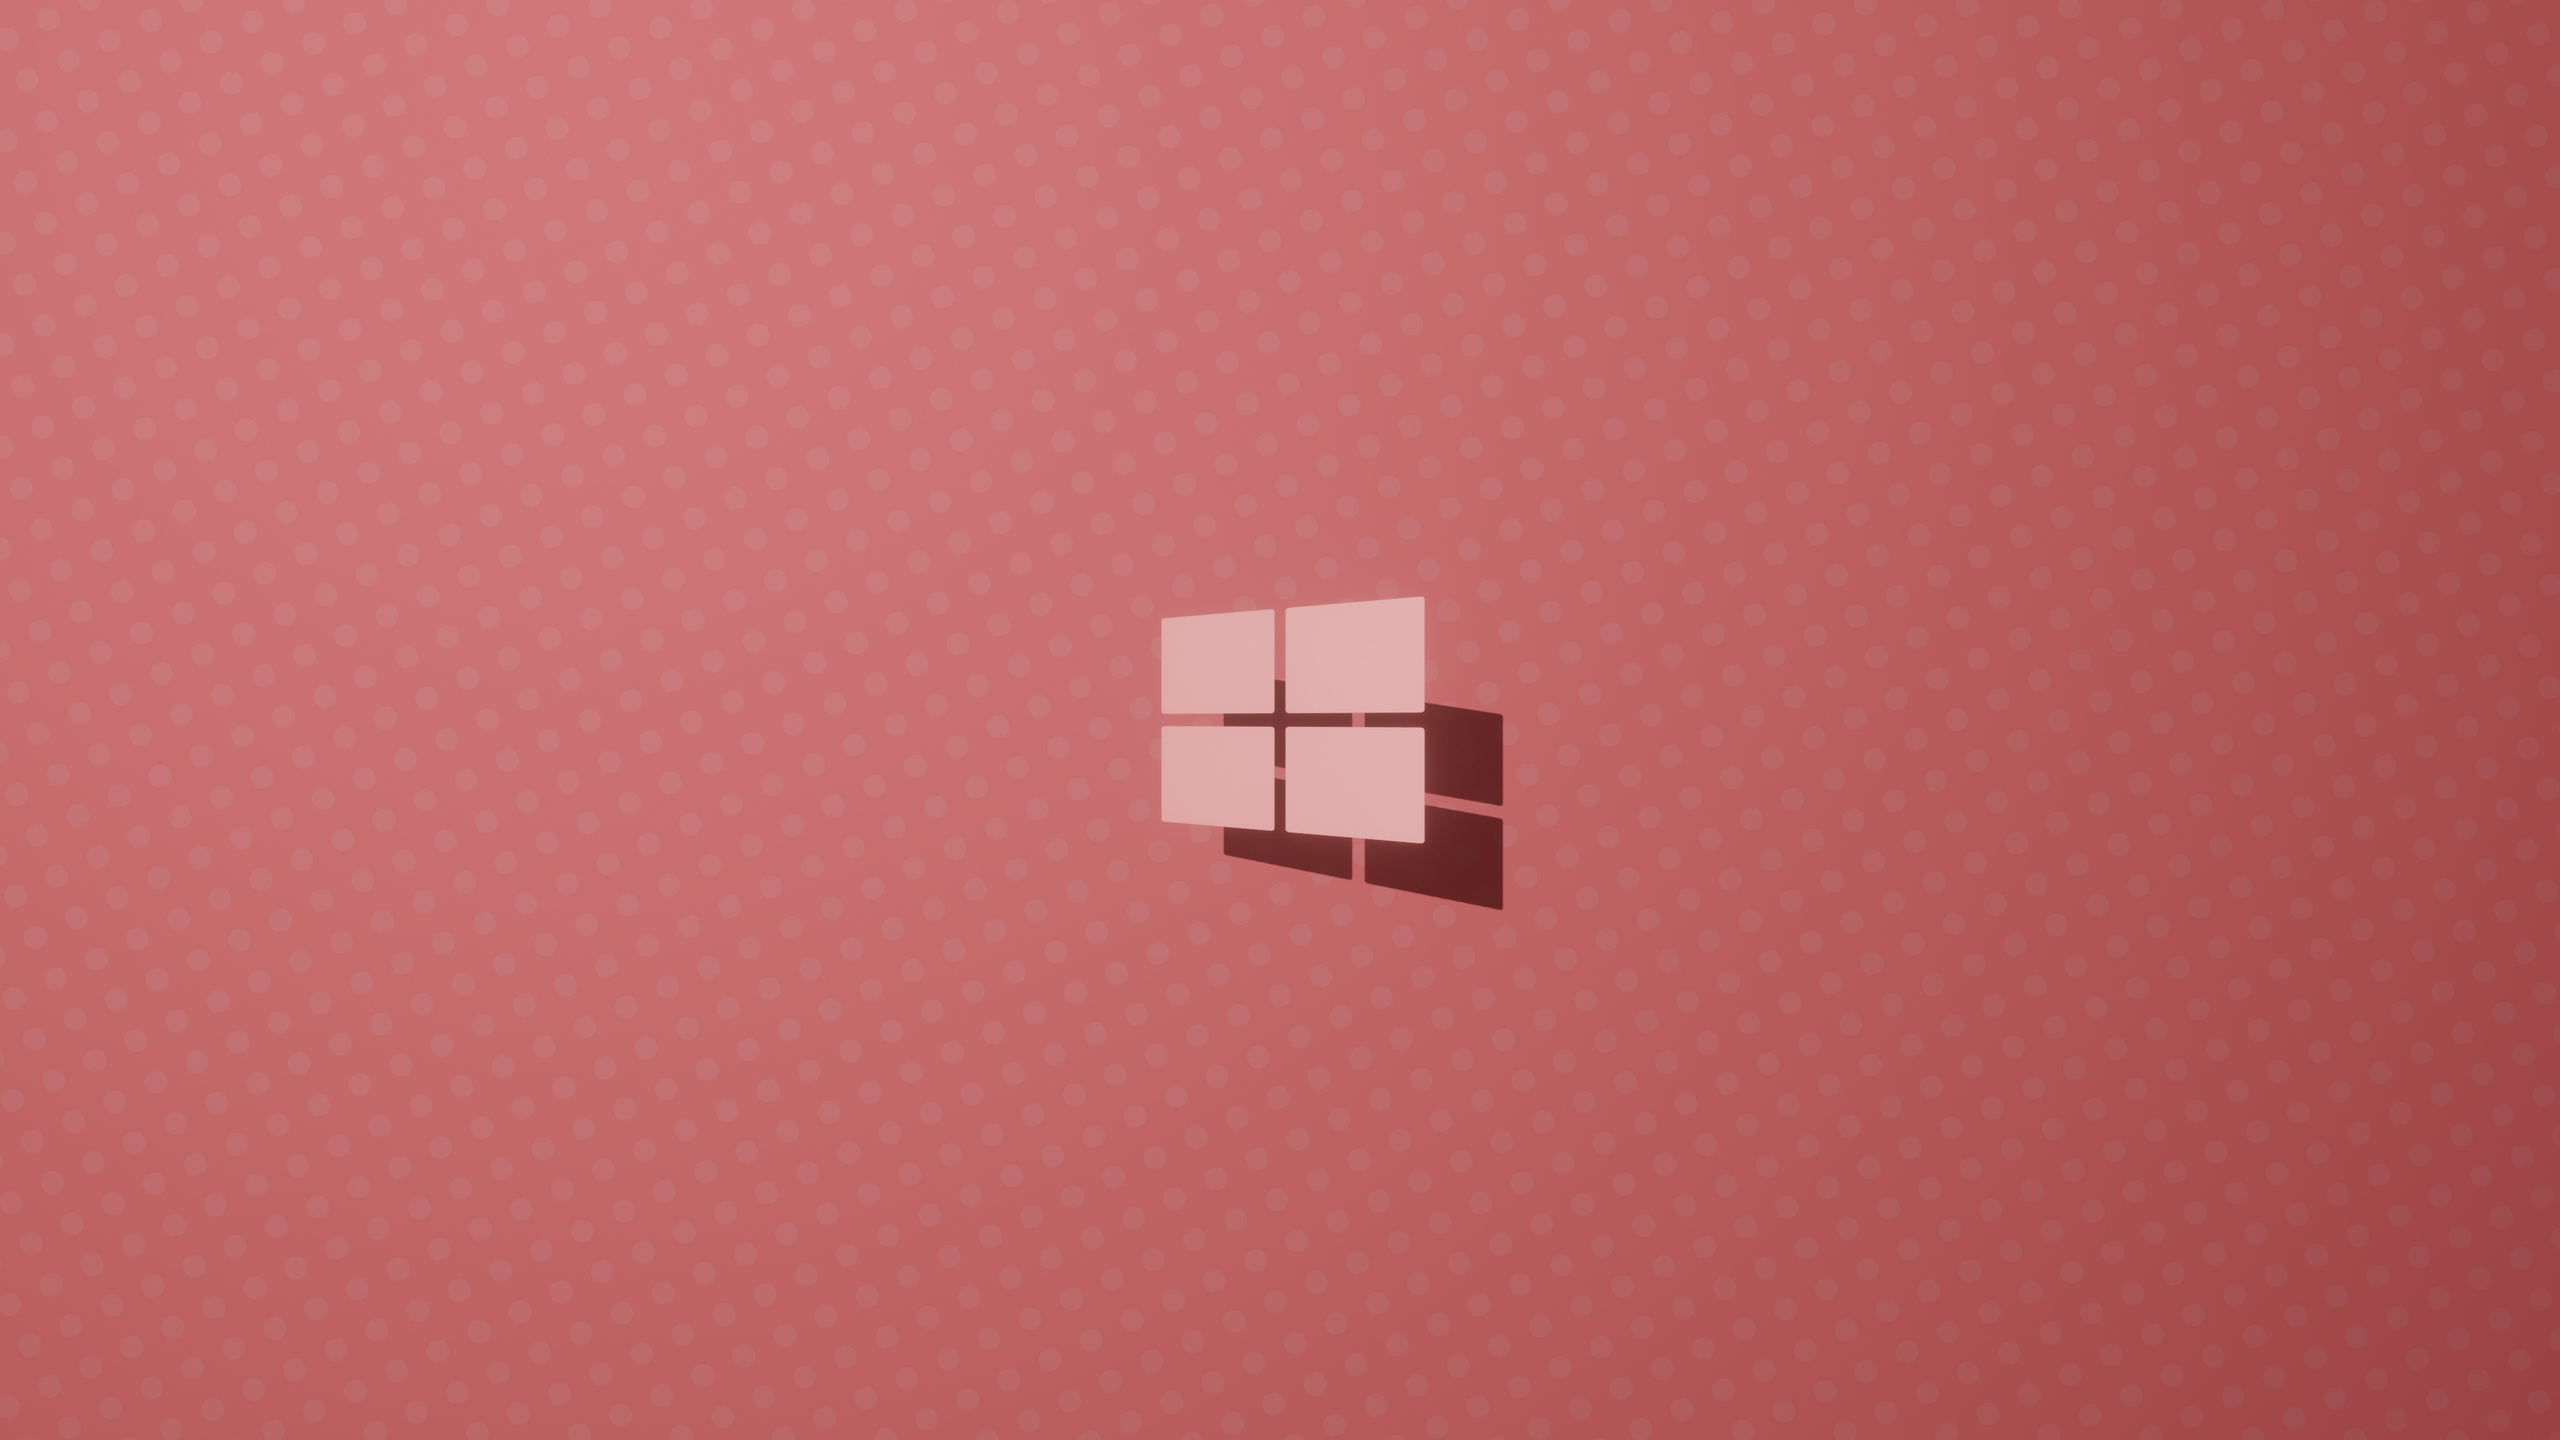 Windows 10 Logo Pink 4k 1440P Resolution HD 4k sẽ làm cho màn hình desktop của bạn trở nên tươi sáng và tràn đầy năng lượng. Hình ảnh đẹp này cho thấy tính năng mạnh mẽ của hệ điều hành này cùng với sự thể hiện nghệ thuật đầy ấn tượng.